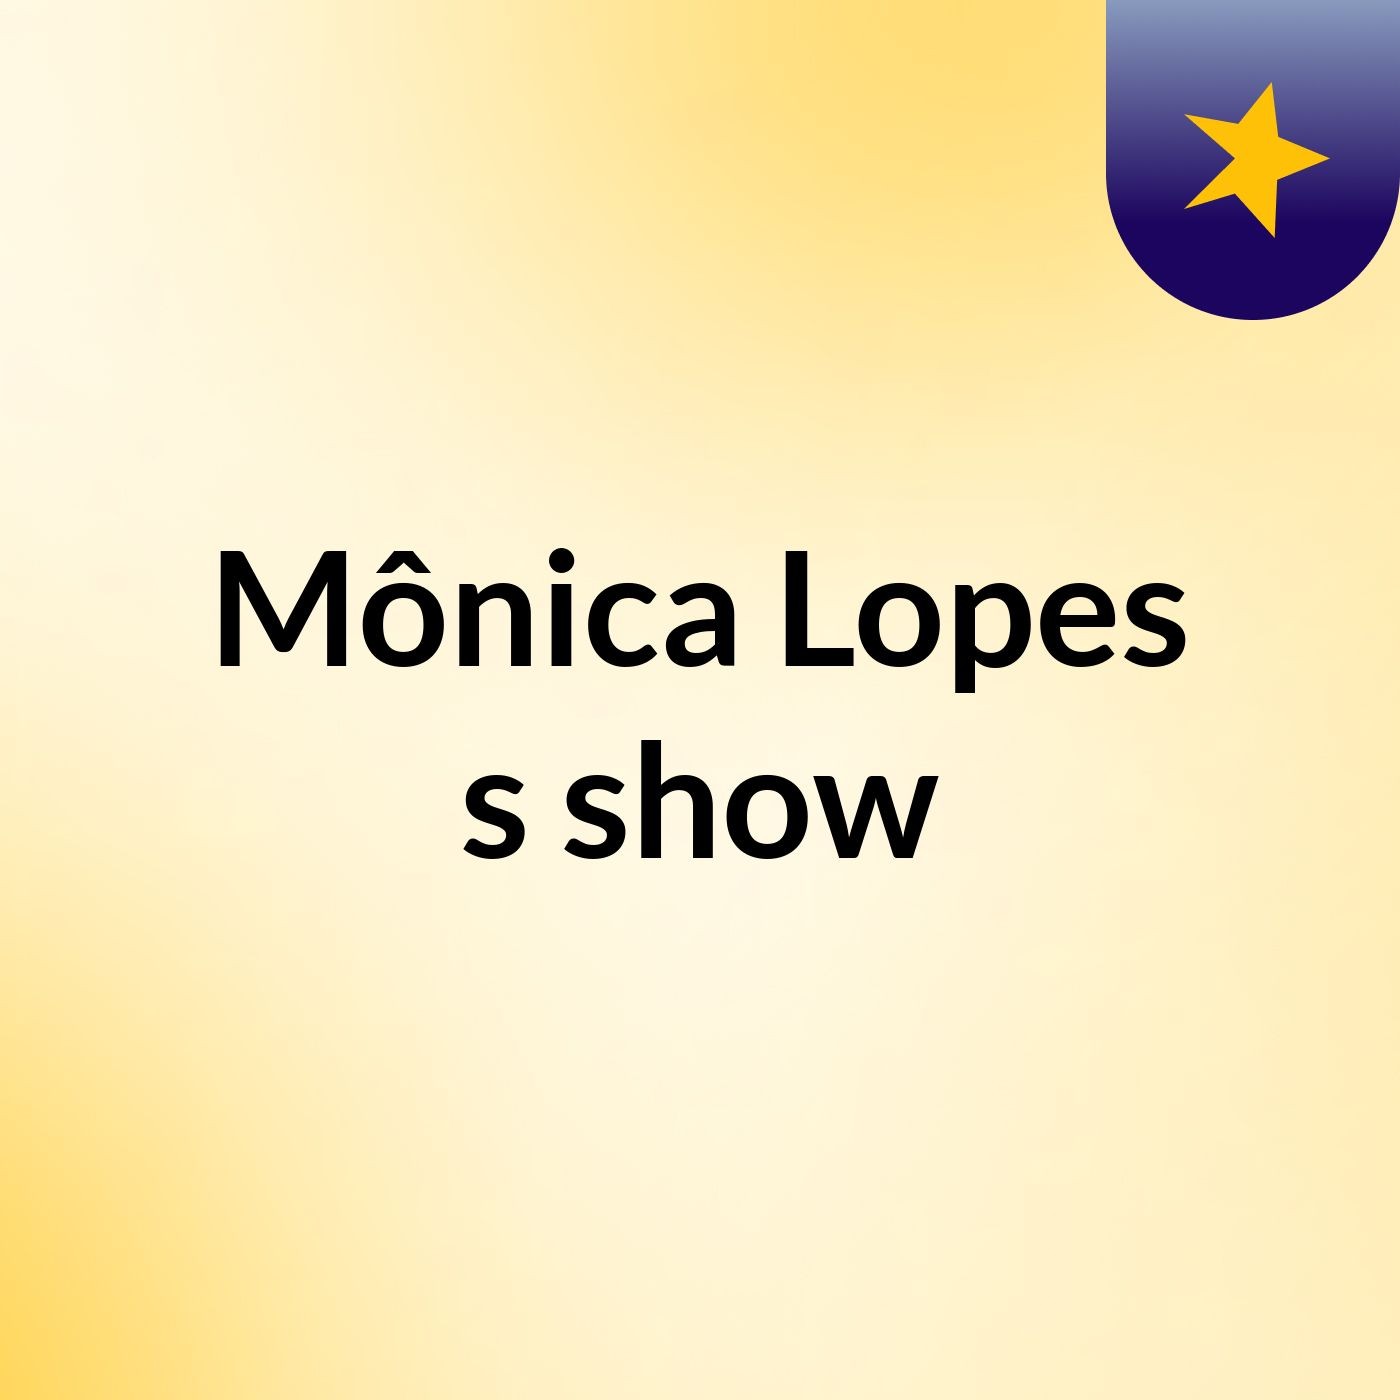 Mônica Lopes's show